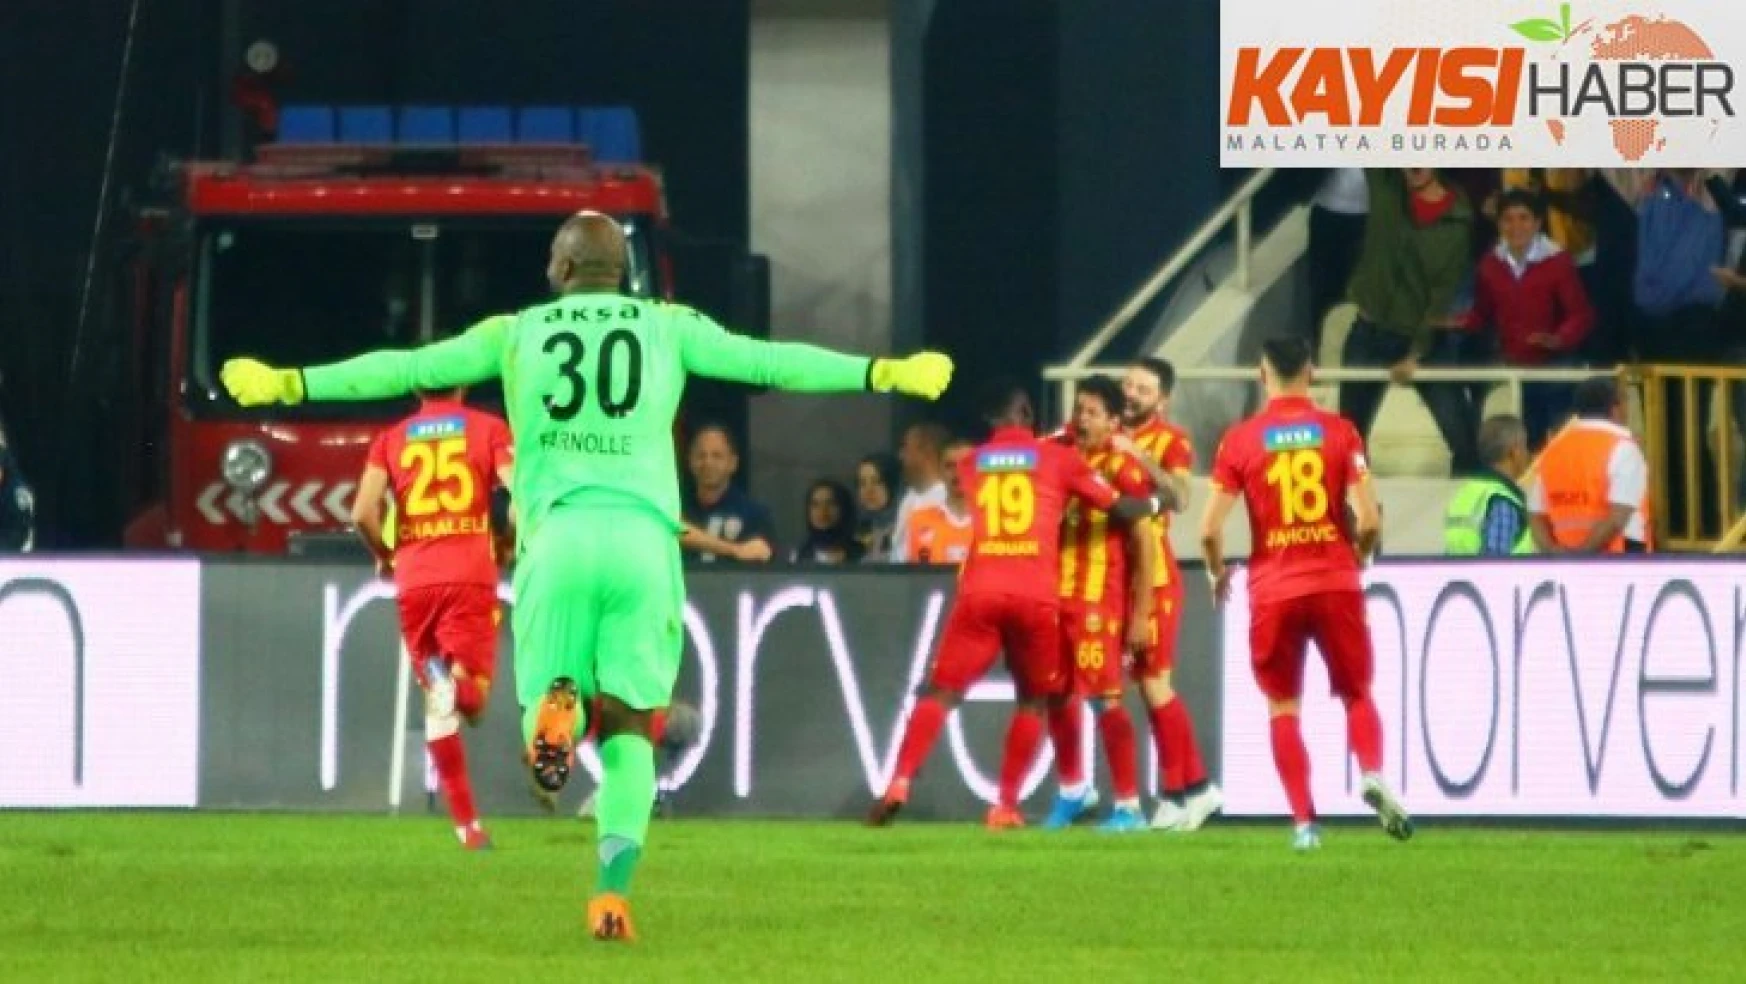 Guilherme asist ve golleriyle Yeni Malatyaspor'u sırtlıyor